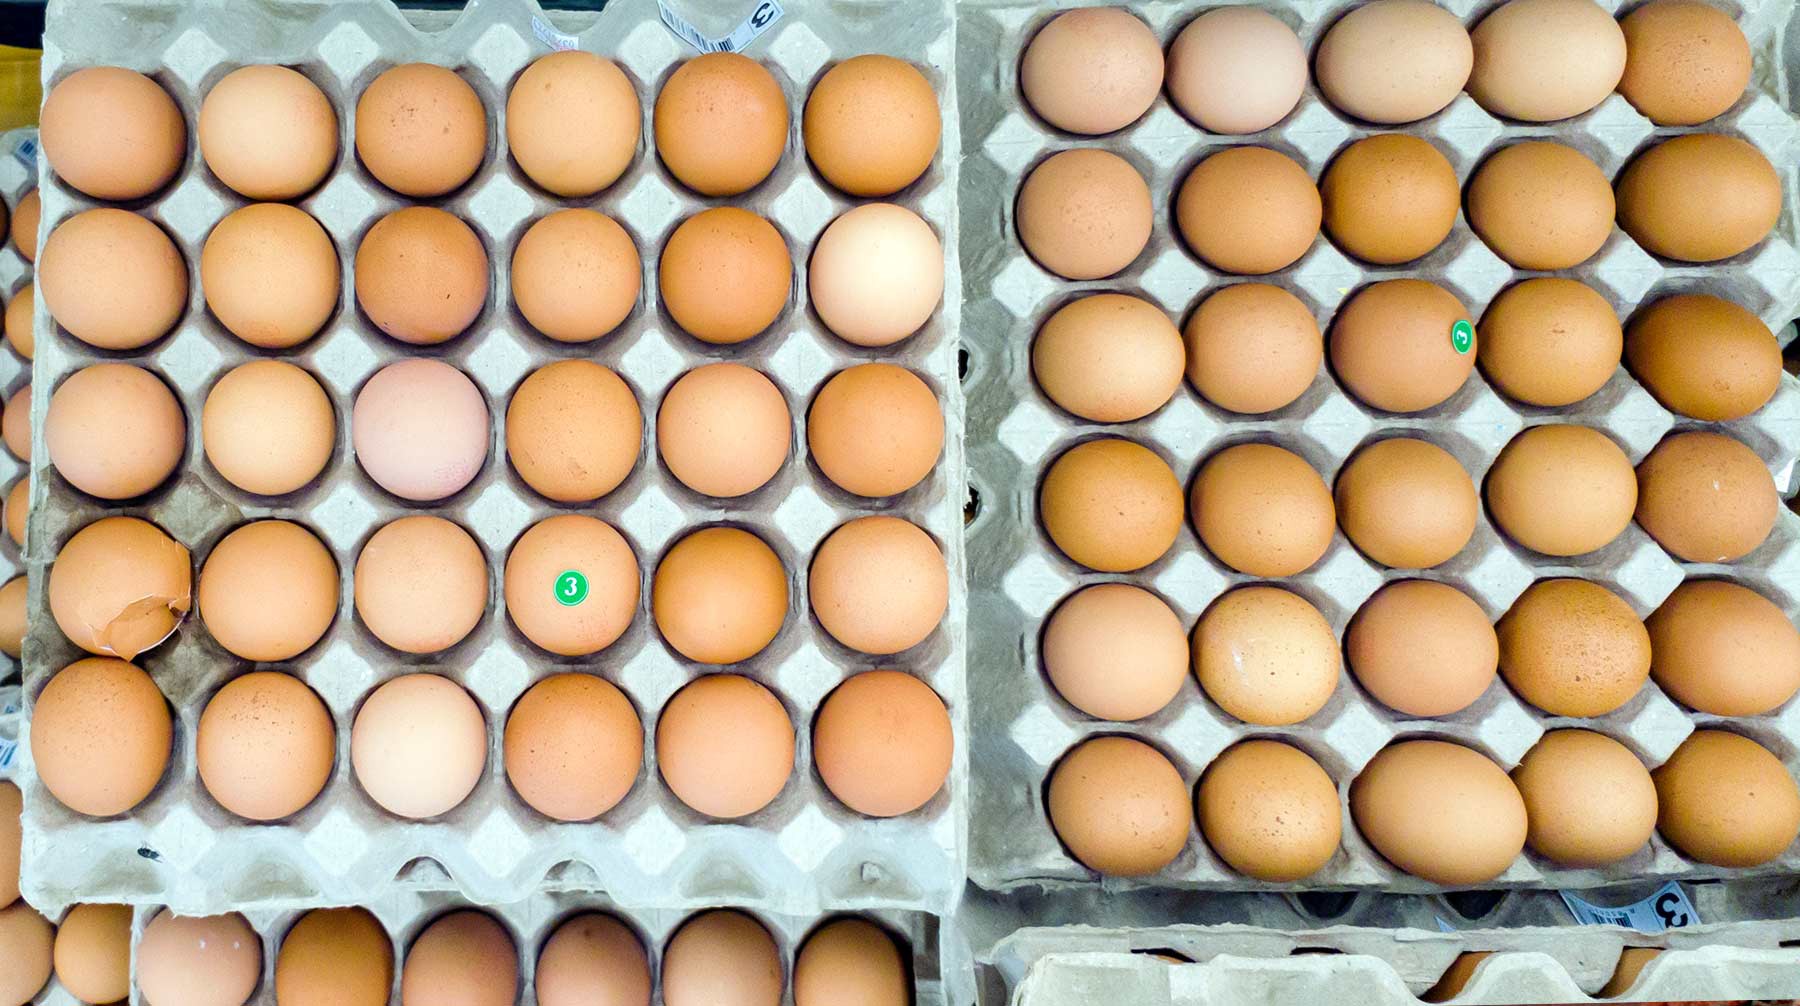 Dailystorm - Производители предупредили о подорожании яиц и мяса птицы